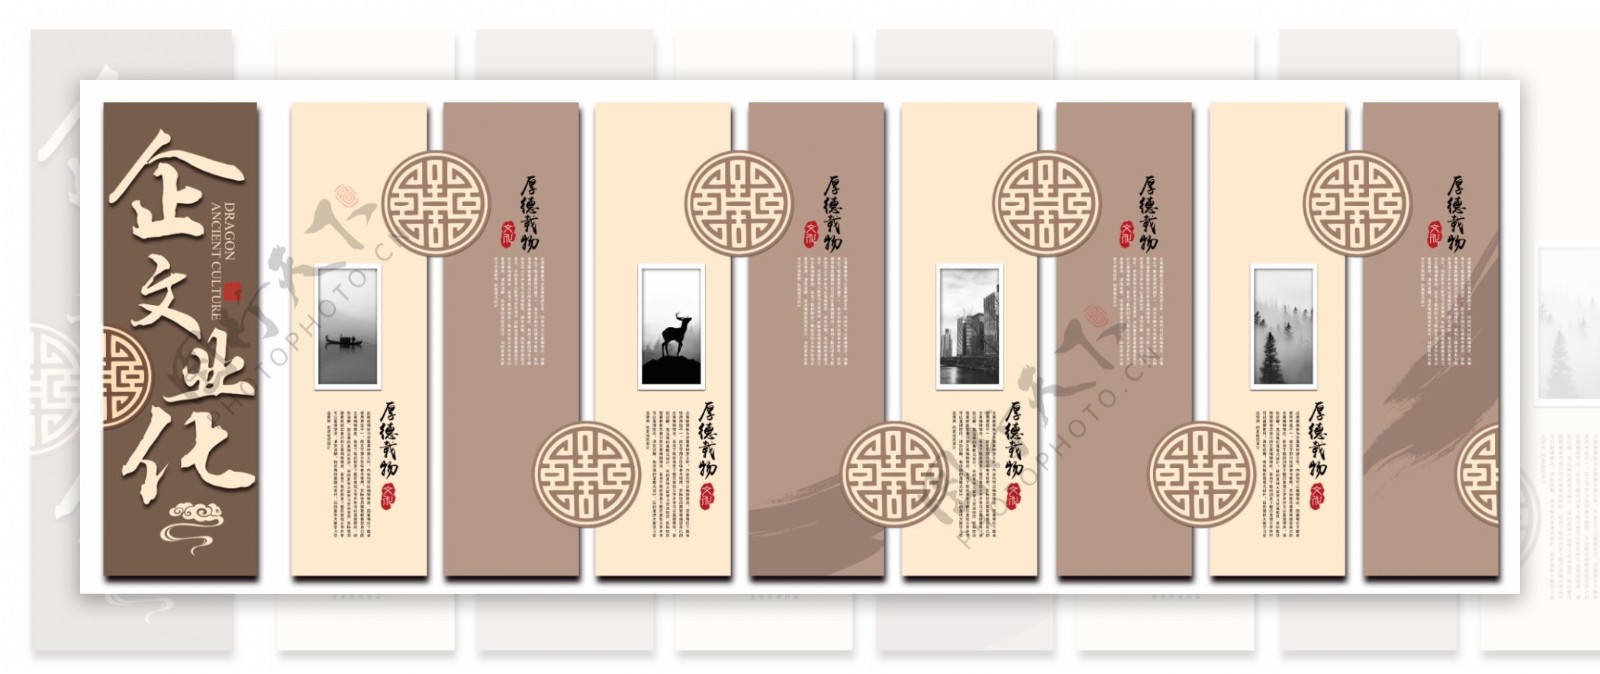 中式企业文化墙设计